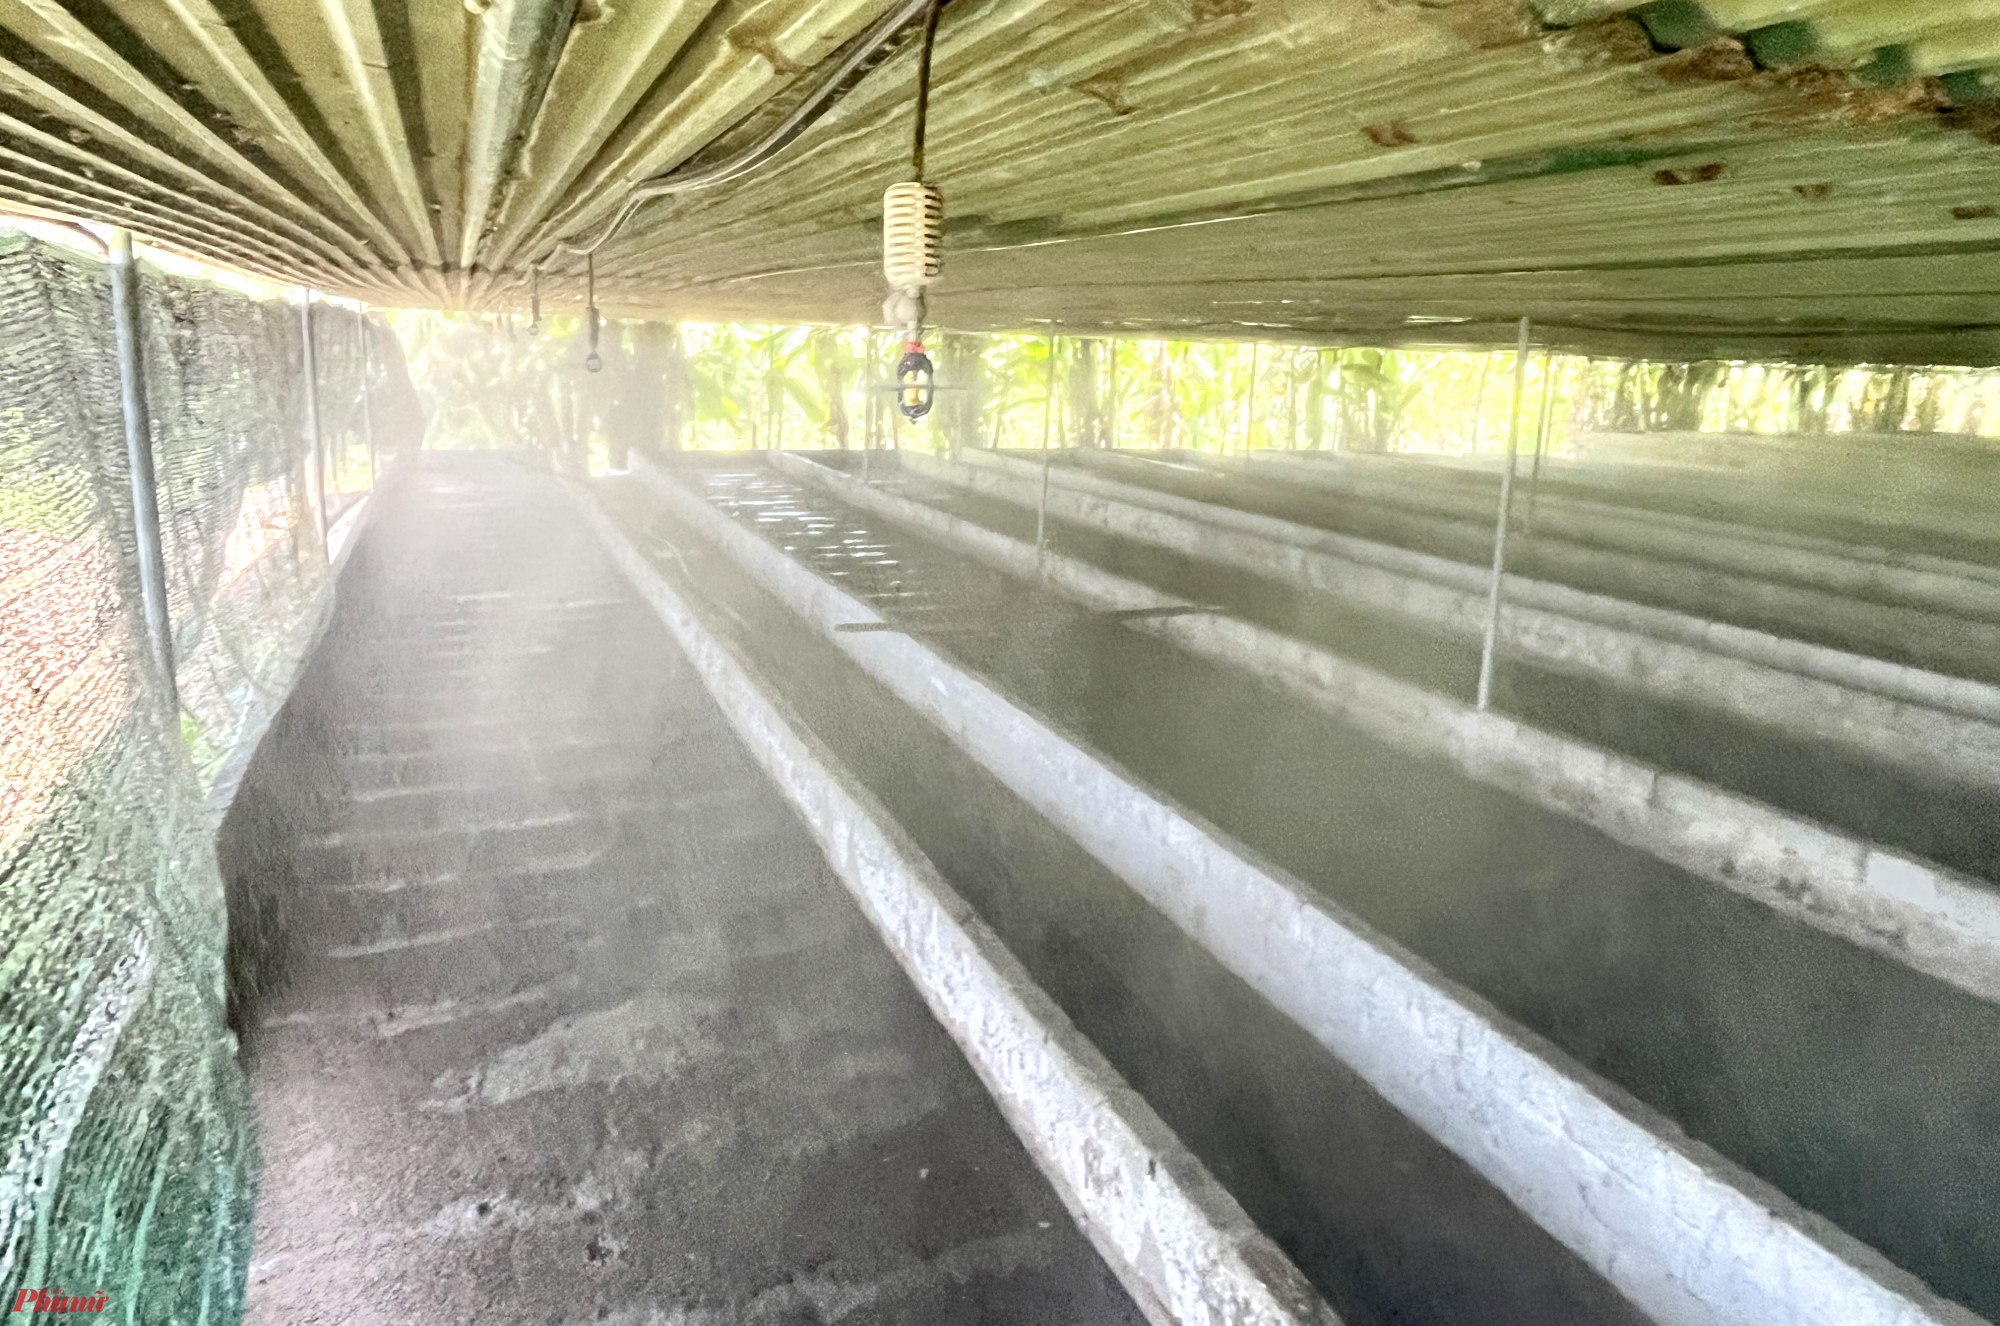 Hệ thống phun sương làm mát, giảm nhiệt độ bên trong trang trại nuôi giun - Ảnh: Phan Ngọc